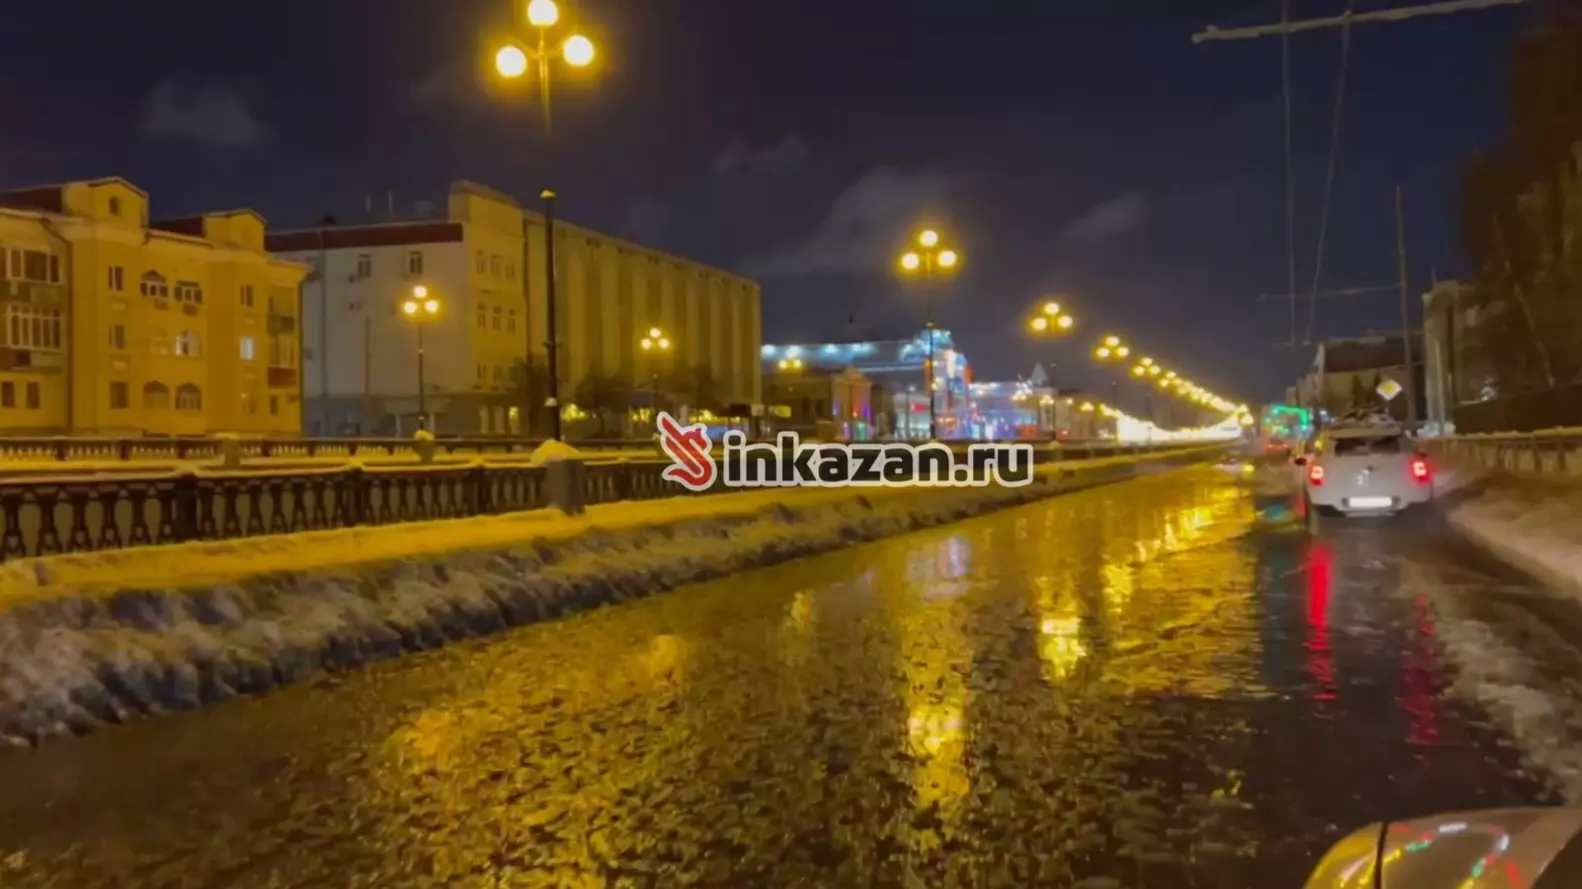 В Казани в новогоднюю ночь затопило улицу Лево-Булачную из-за аварии на сетях